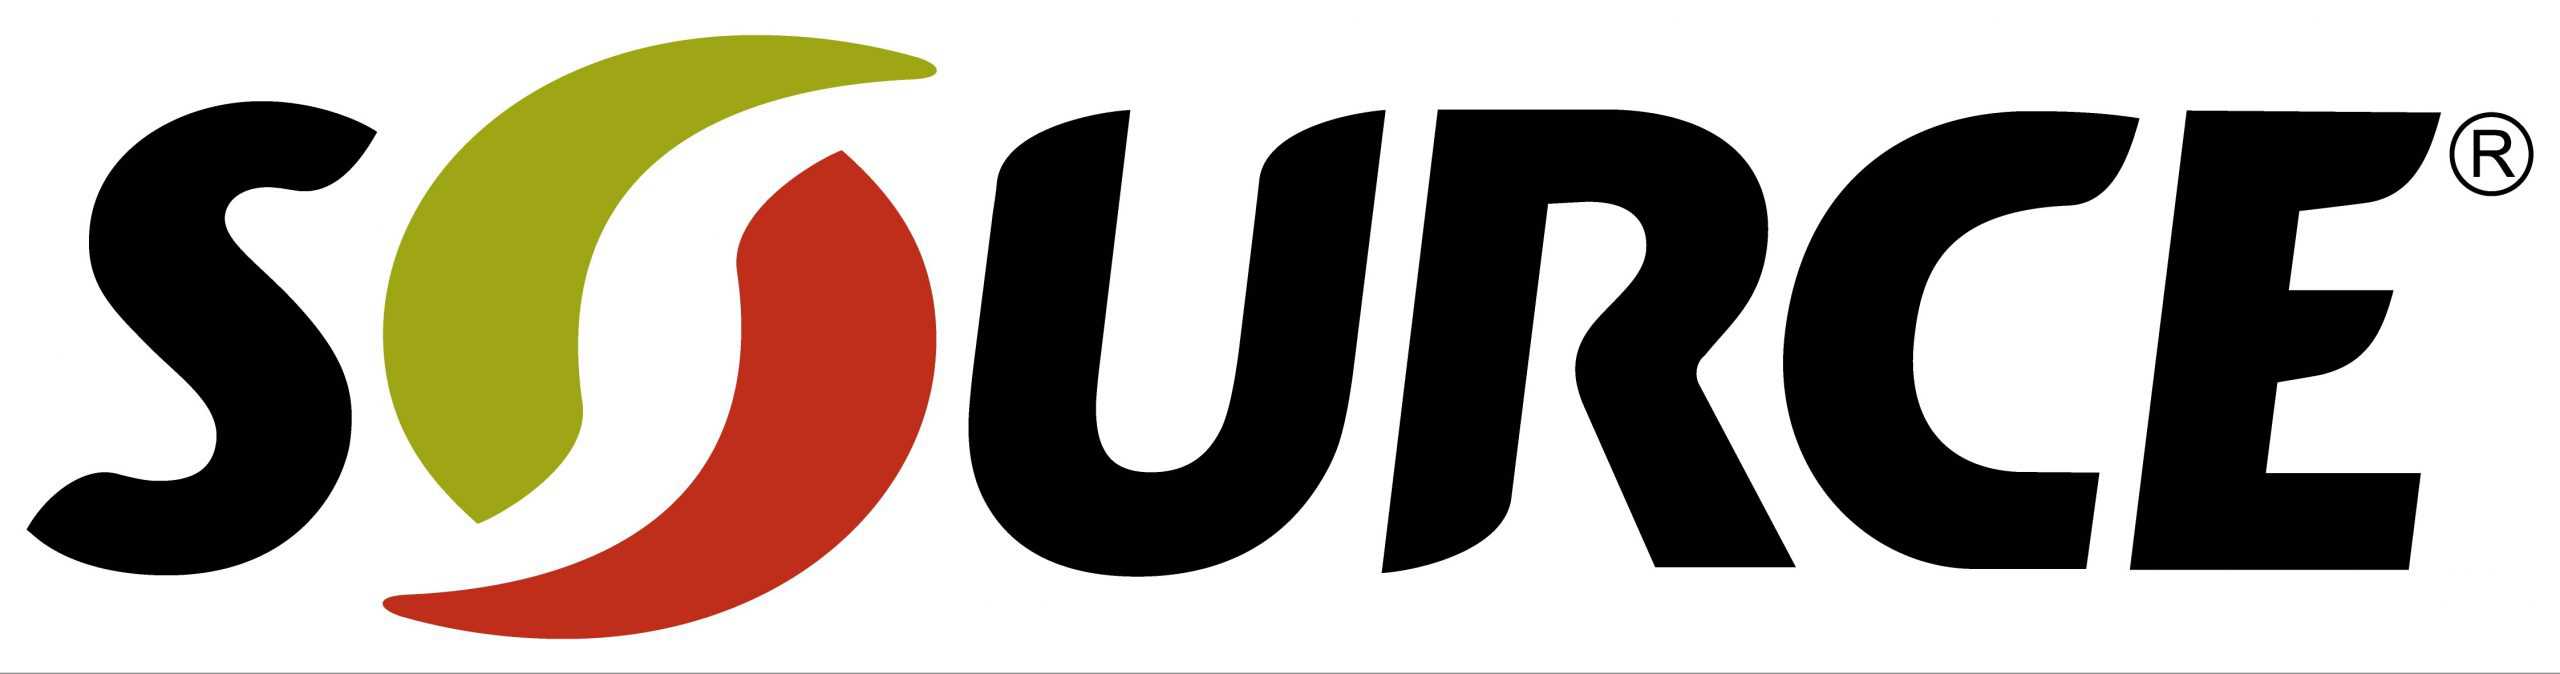 source-logo.jpg